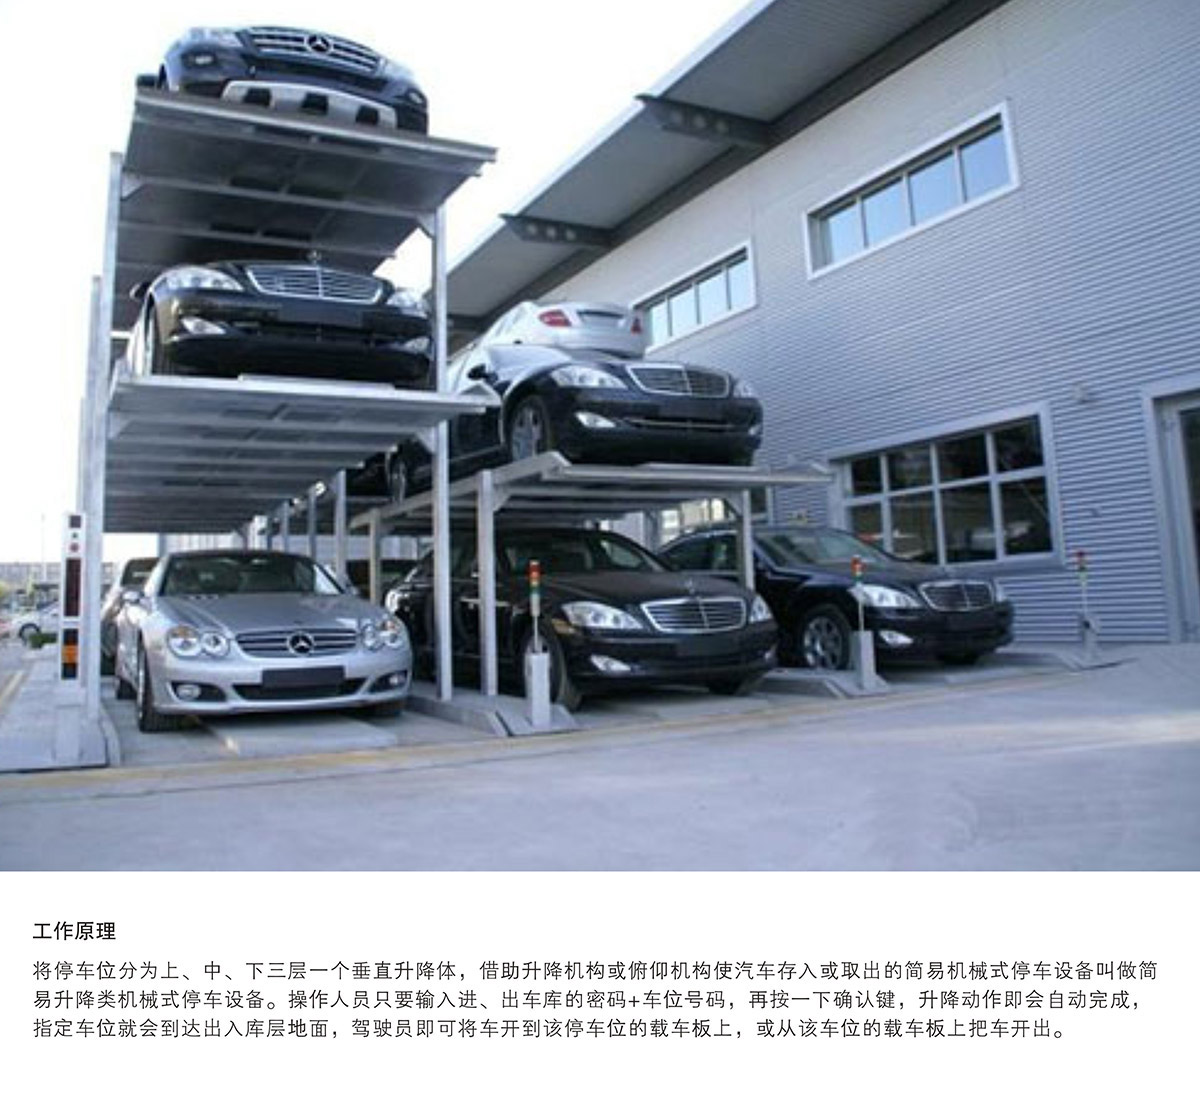 重庆PJS3-D2三层地坑简易升降立体停车设备工作原理.jpg